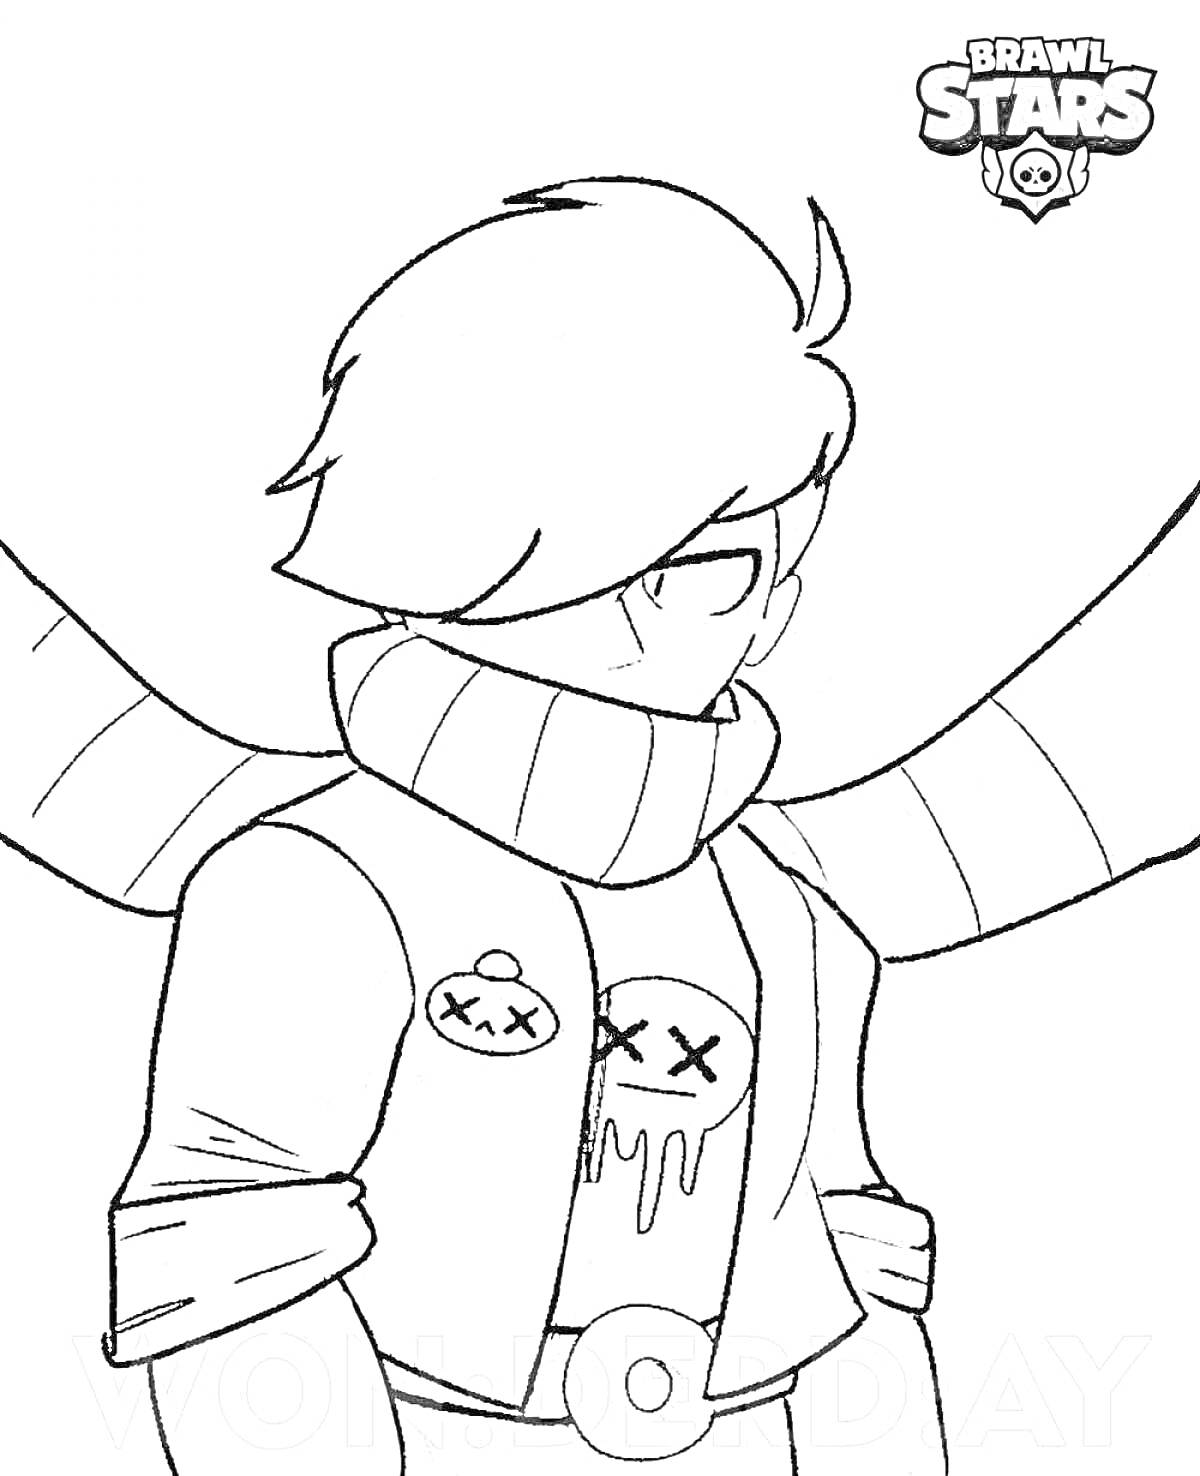 Эдгар из игры Brawl Stars с шарфом и значком черепа, наброшенным на плечи